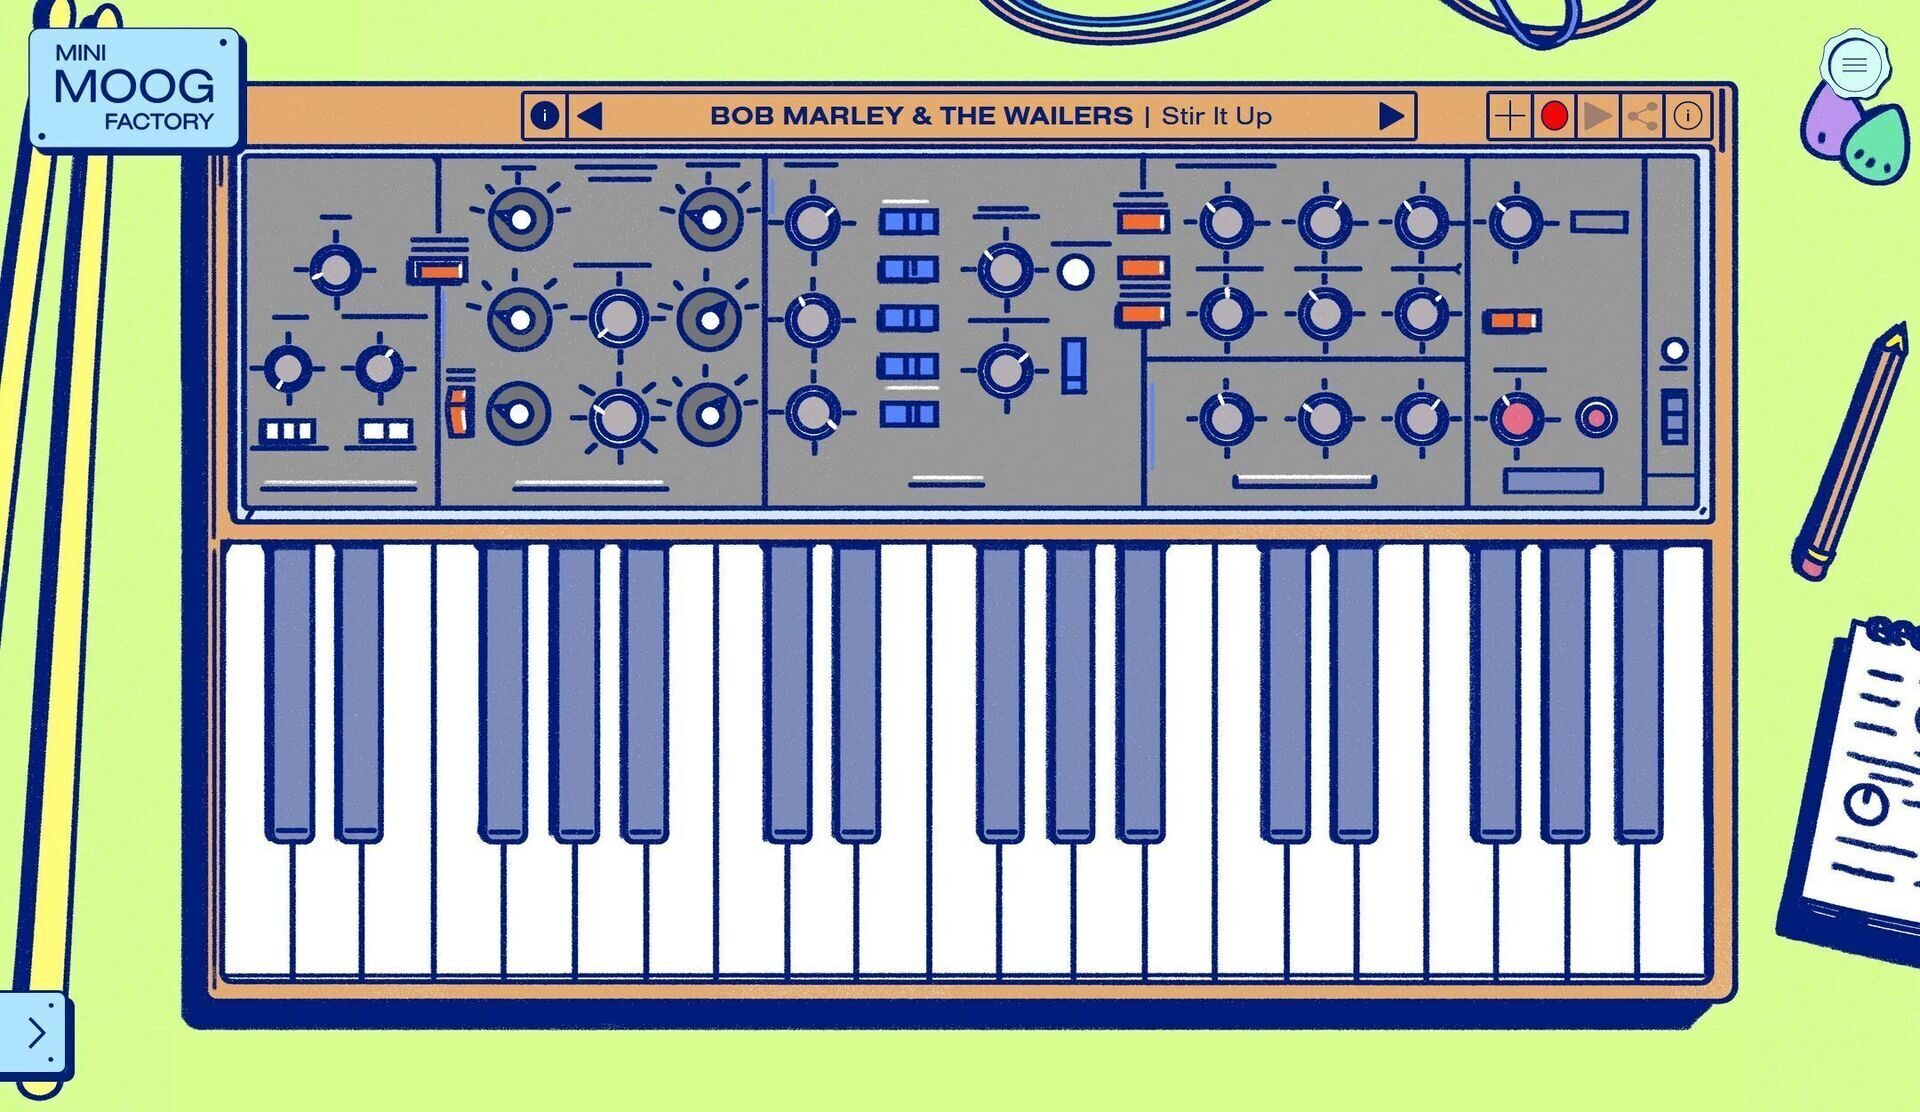 К 70-летию Moog представили сайт-синтезатор